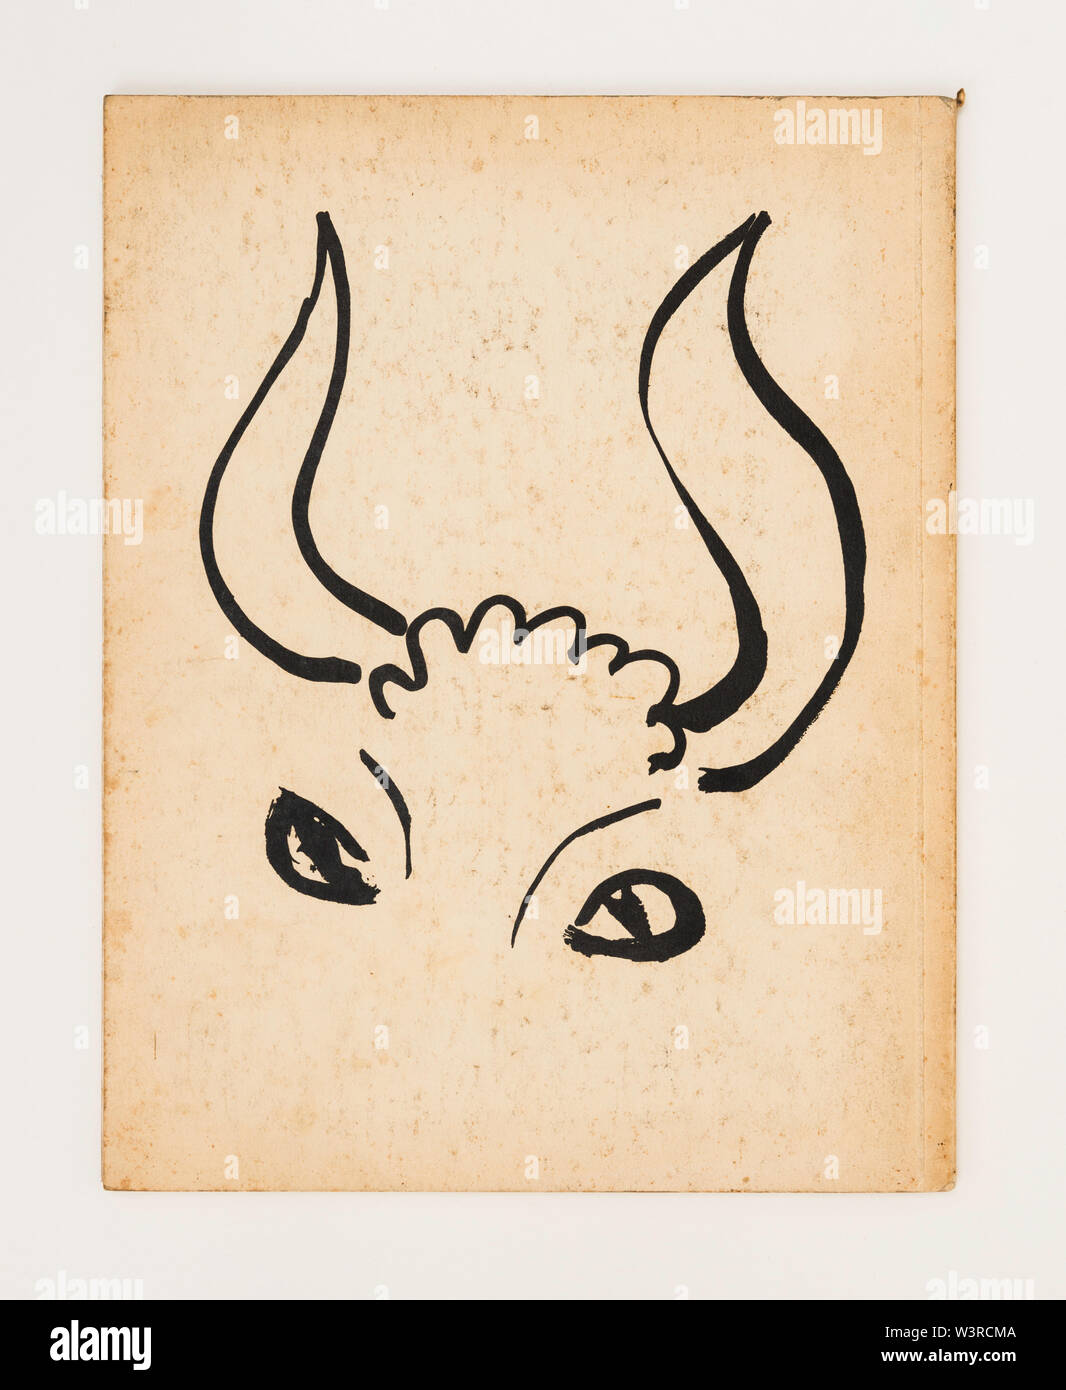 La conception d'Minatour couverture magazine par Henri Matisse, publié par Albert Skira en 1936 Banque D'Images